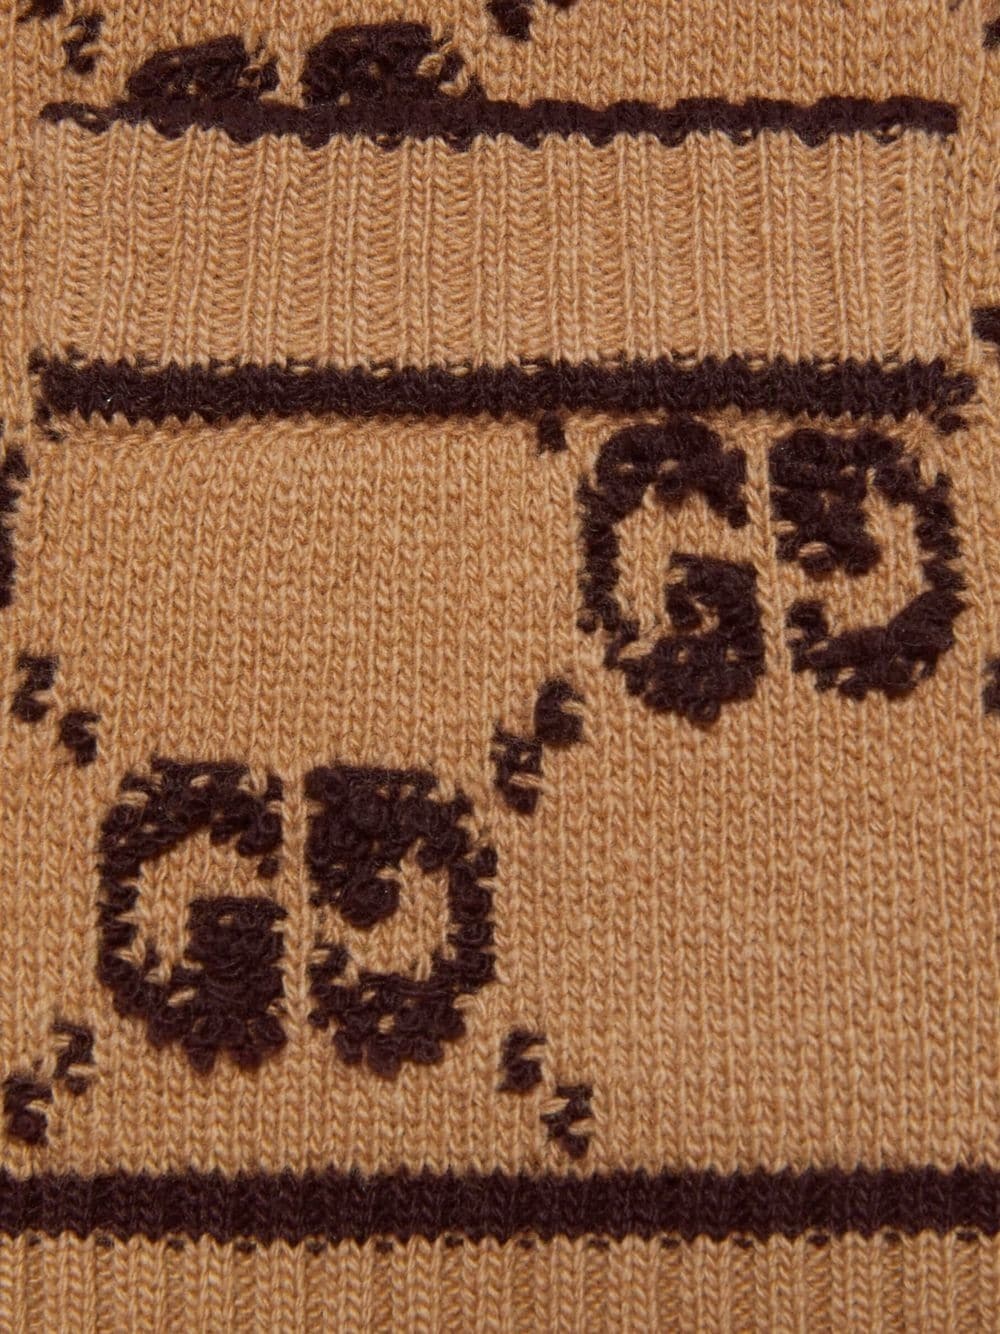 Gg wool cardigan - 2